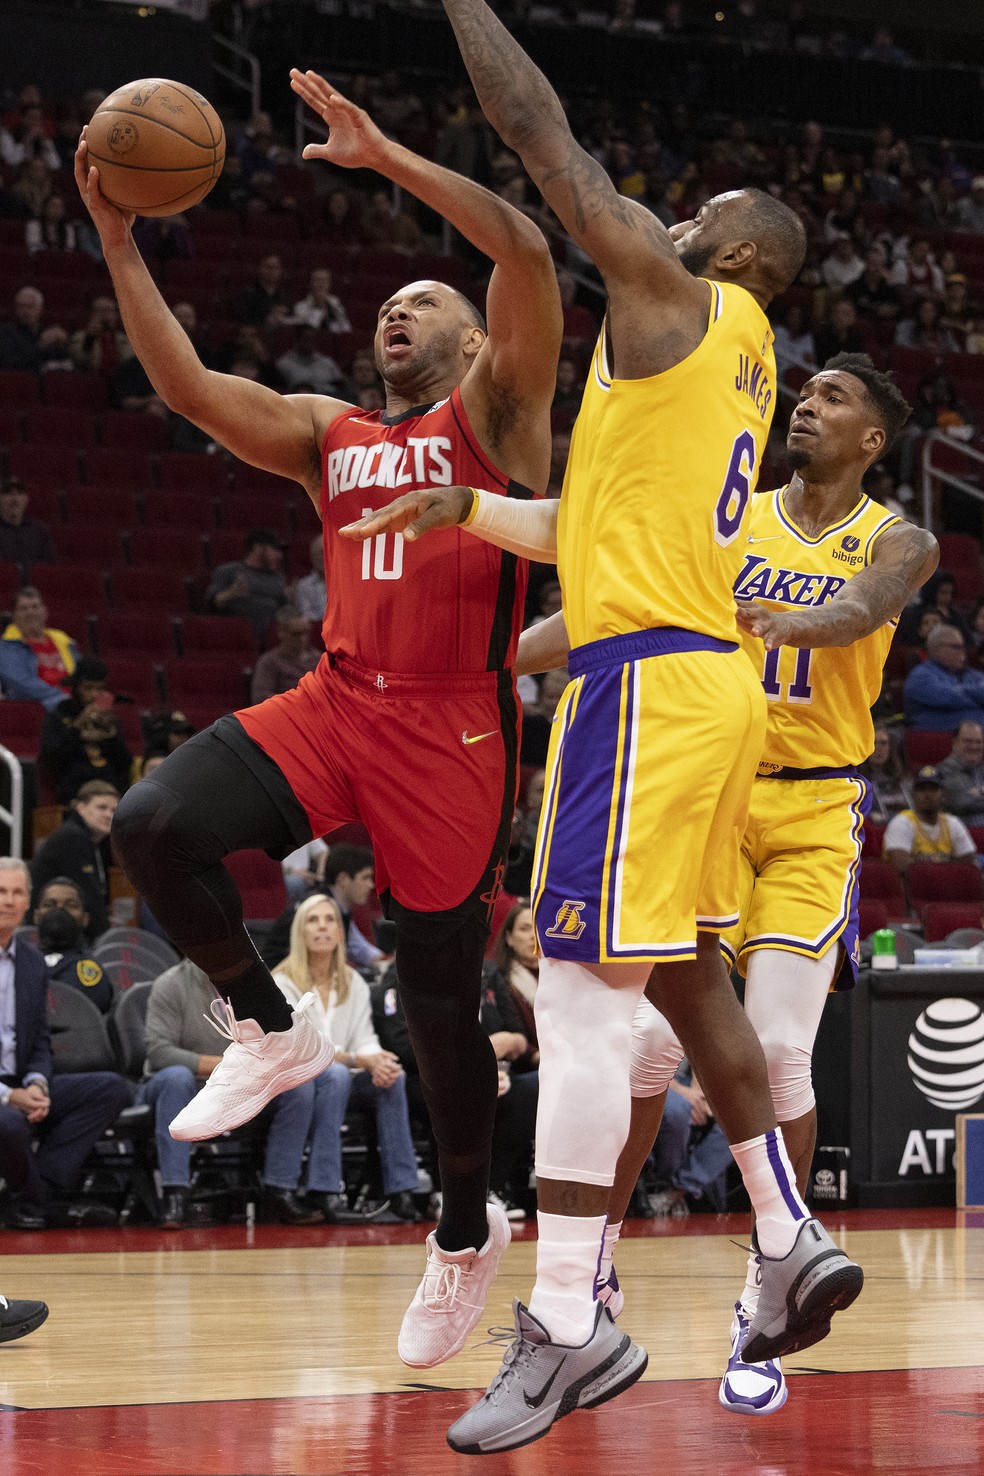 NBA aponta três erros de arbitragem em jogo entre Lakers e Suns